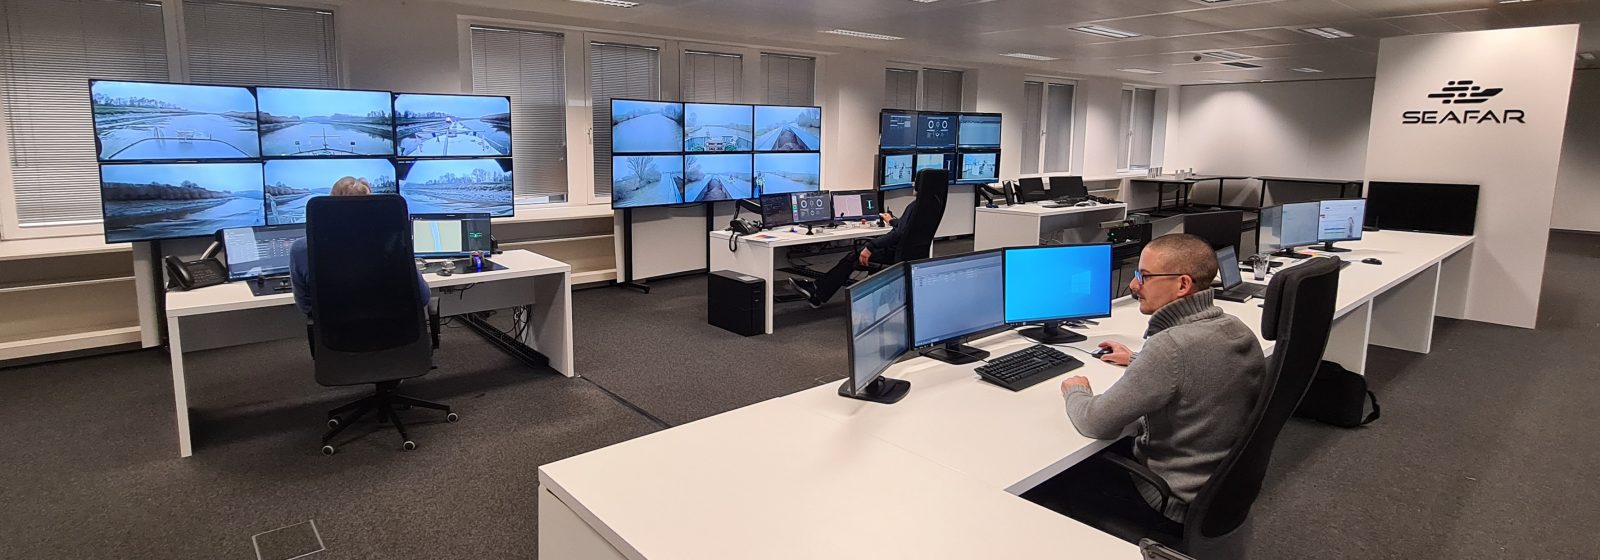 Het controlecentrum van Seafar in Antwerpen